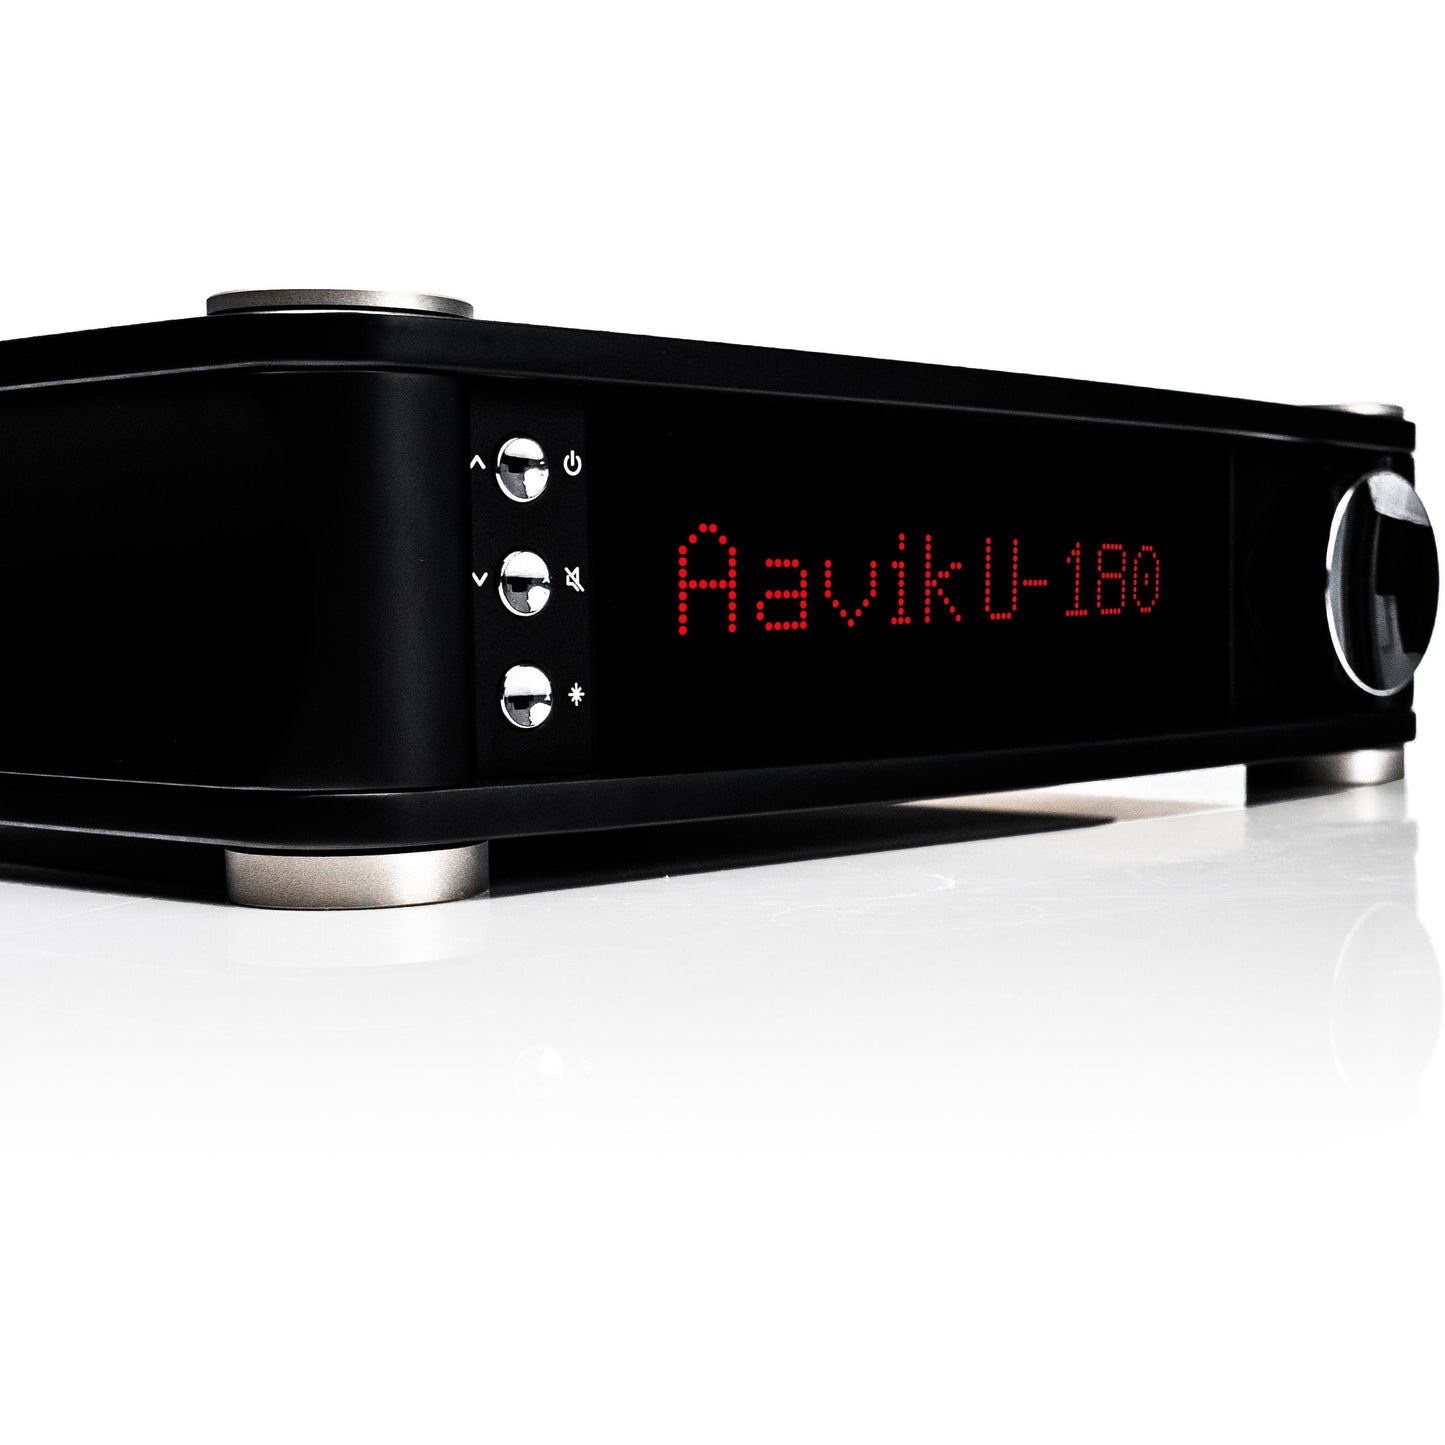 Aavik U-580 Uniti Integrated Amplifier